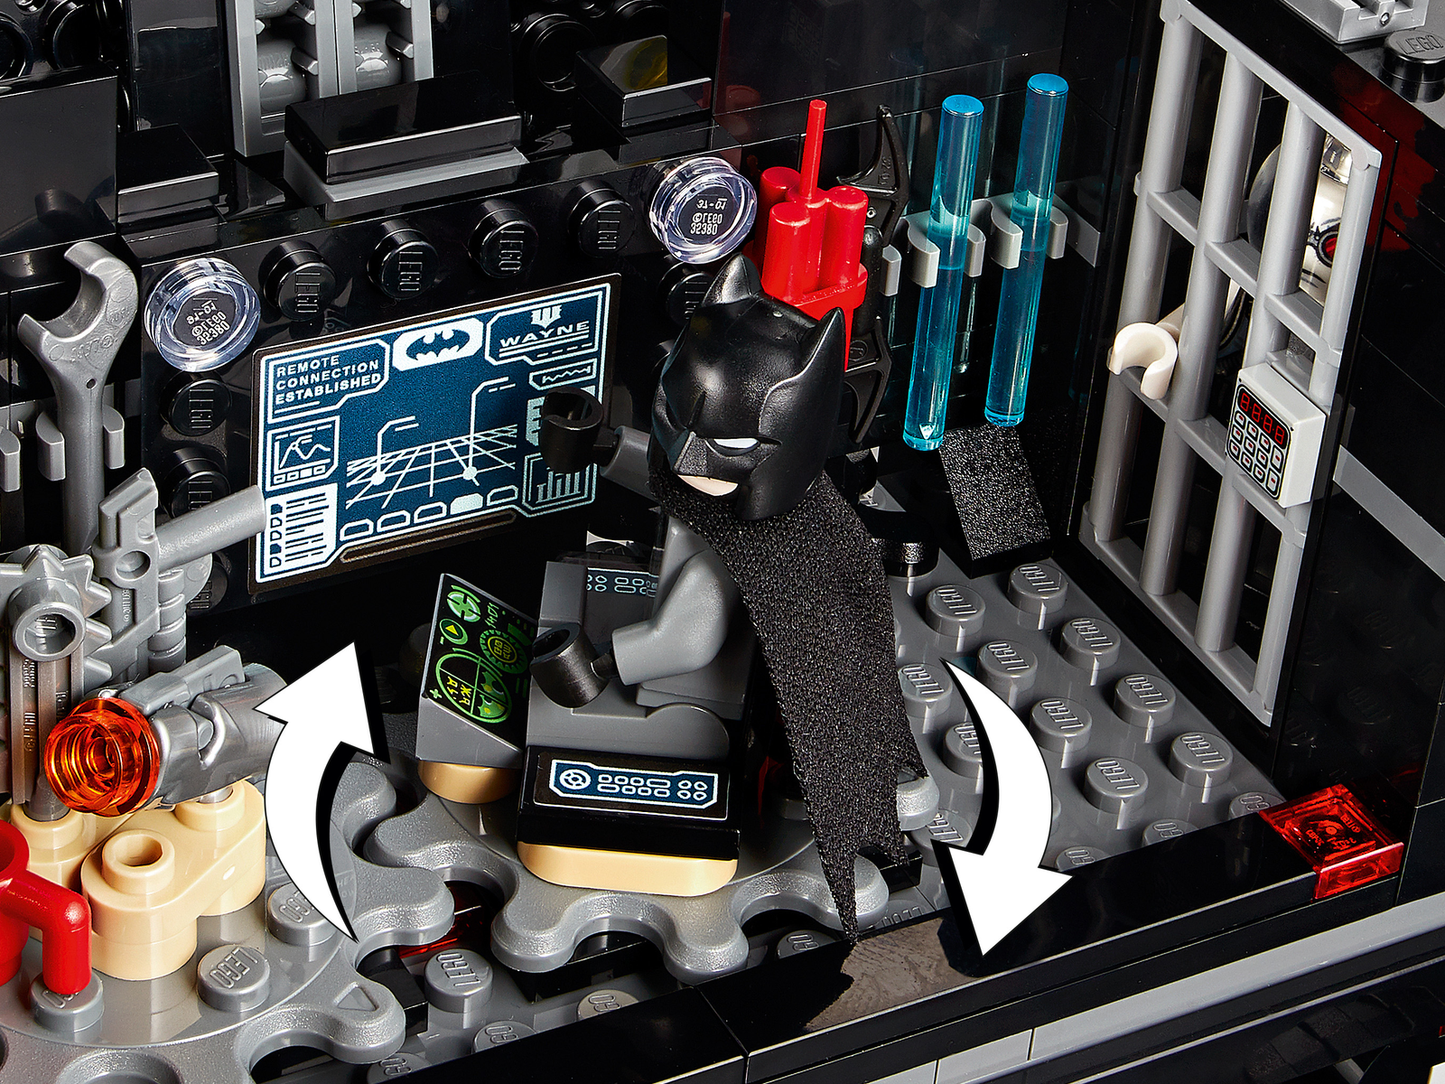 Lego DC Batman Mobile Bat Base 76160